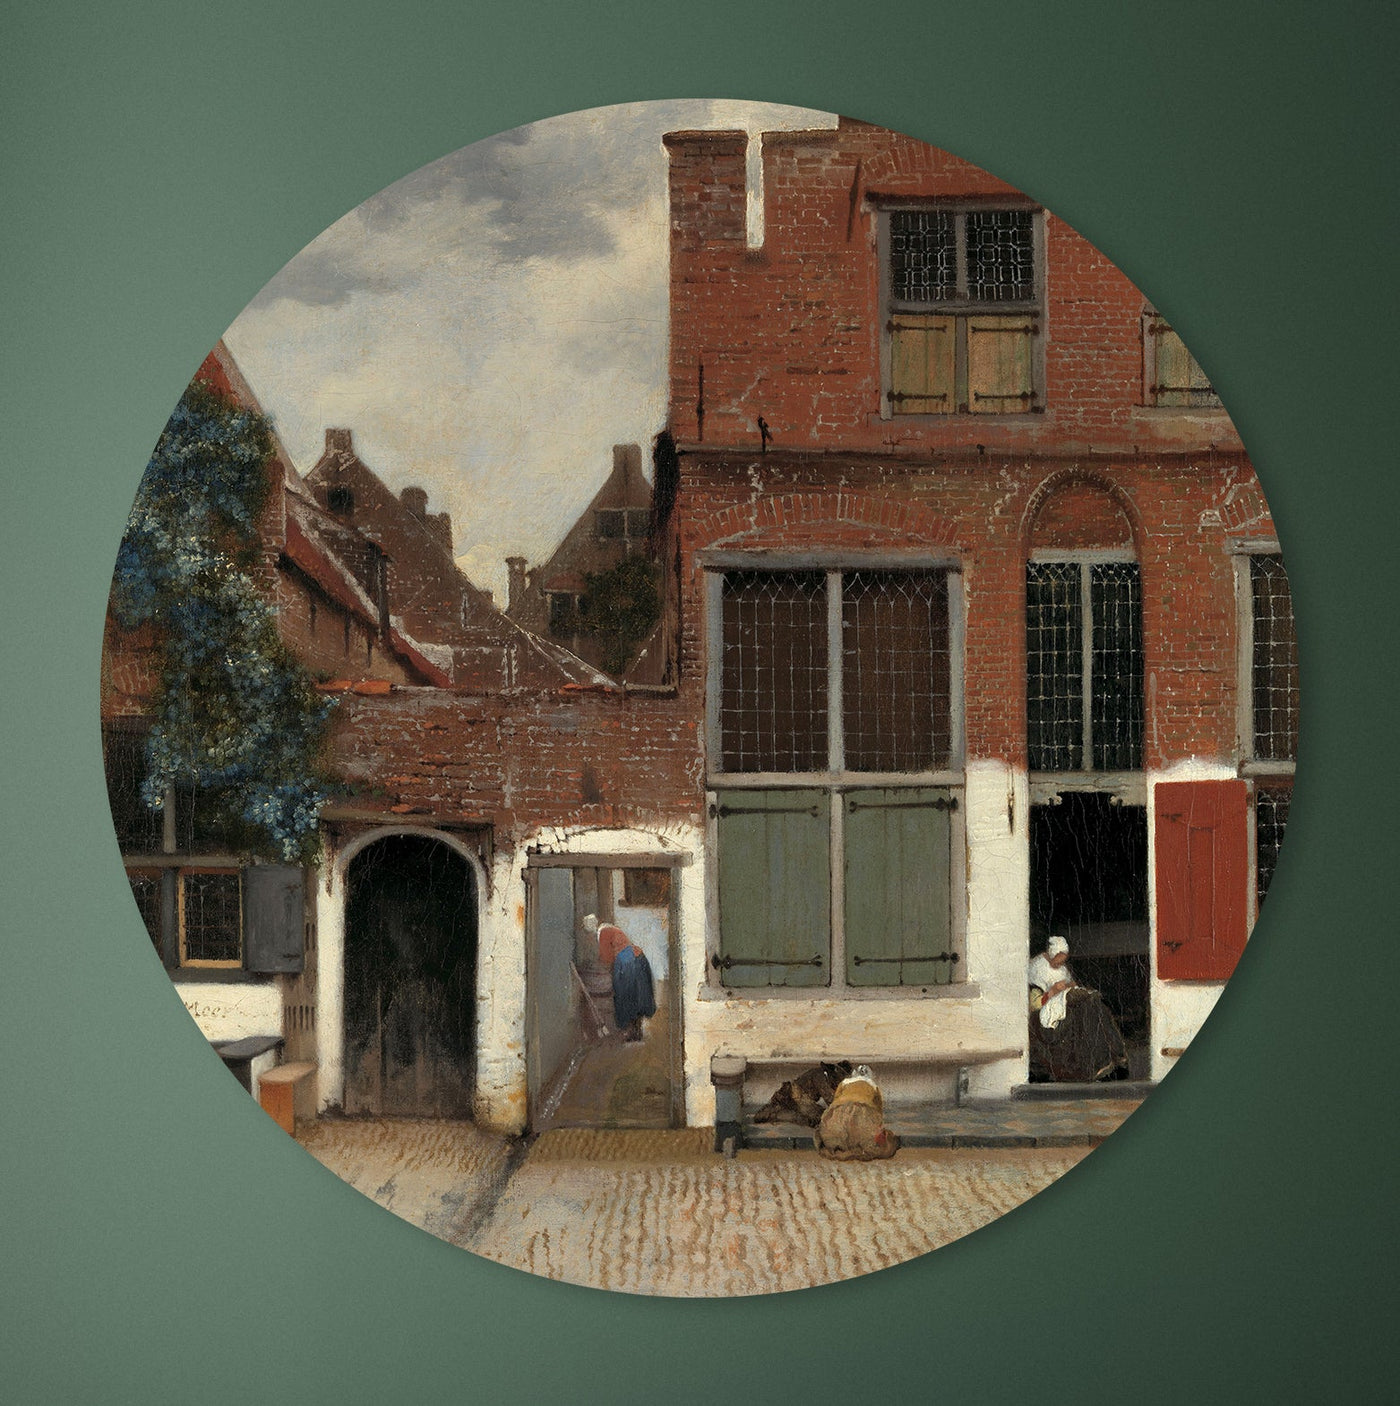 Het straatje - Johannes Vermeer